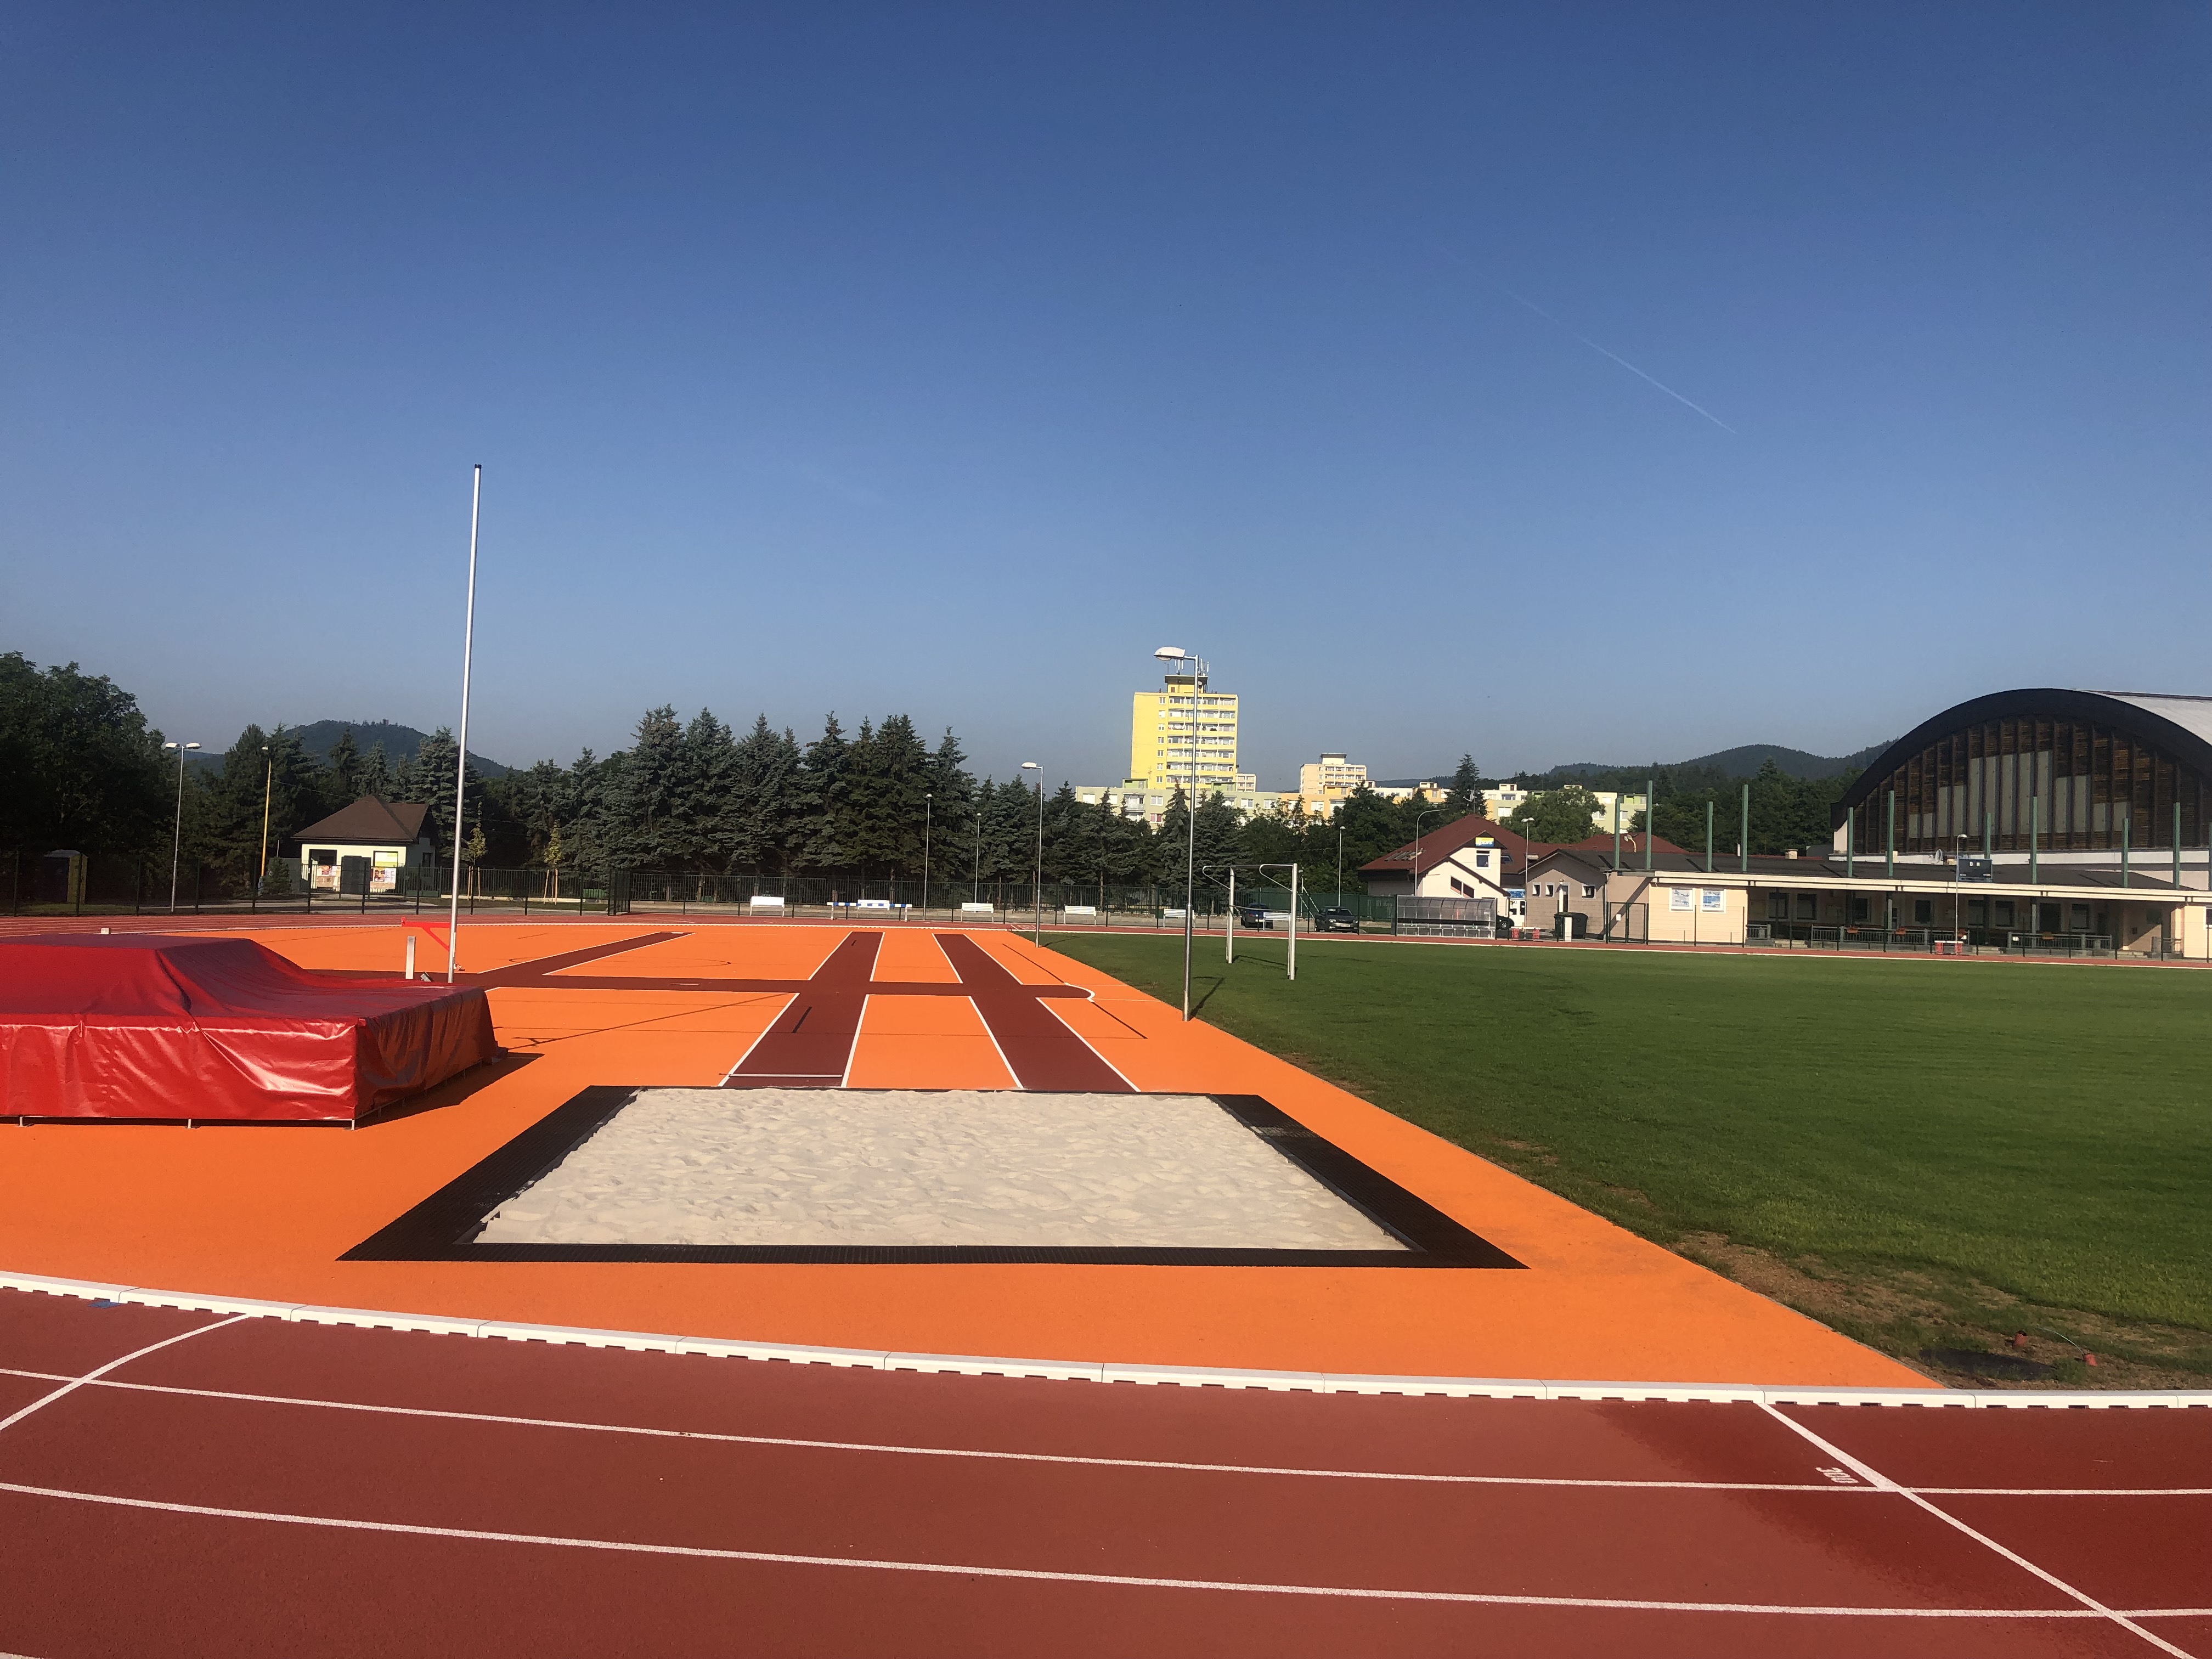 Realizace sportovních povrchů a lajnování - Městský atletický stadion v Klášterci nad Ohří - Inženýrské stavby